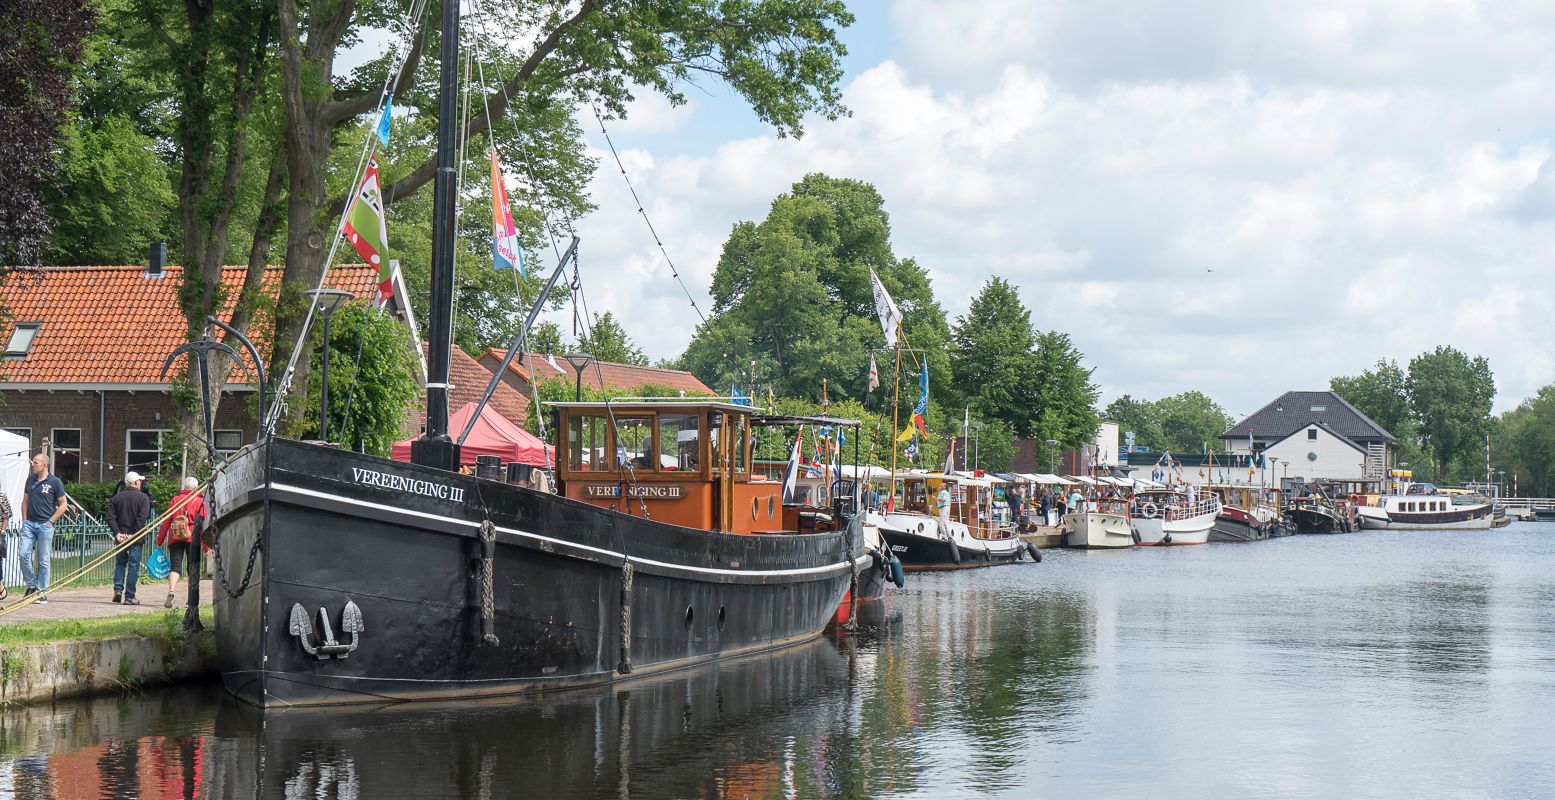 Bewonder historische schepen tijdens De Sluisdagen in Dieverbrug. Foto: organisatie De Sluisdagen